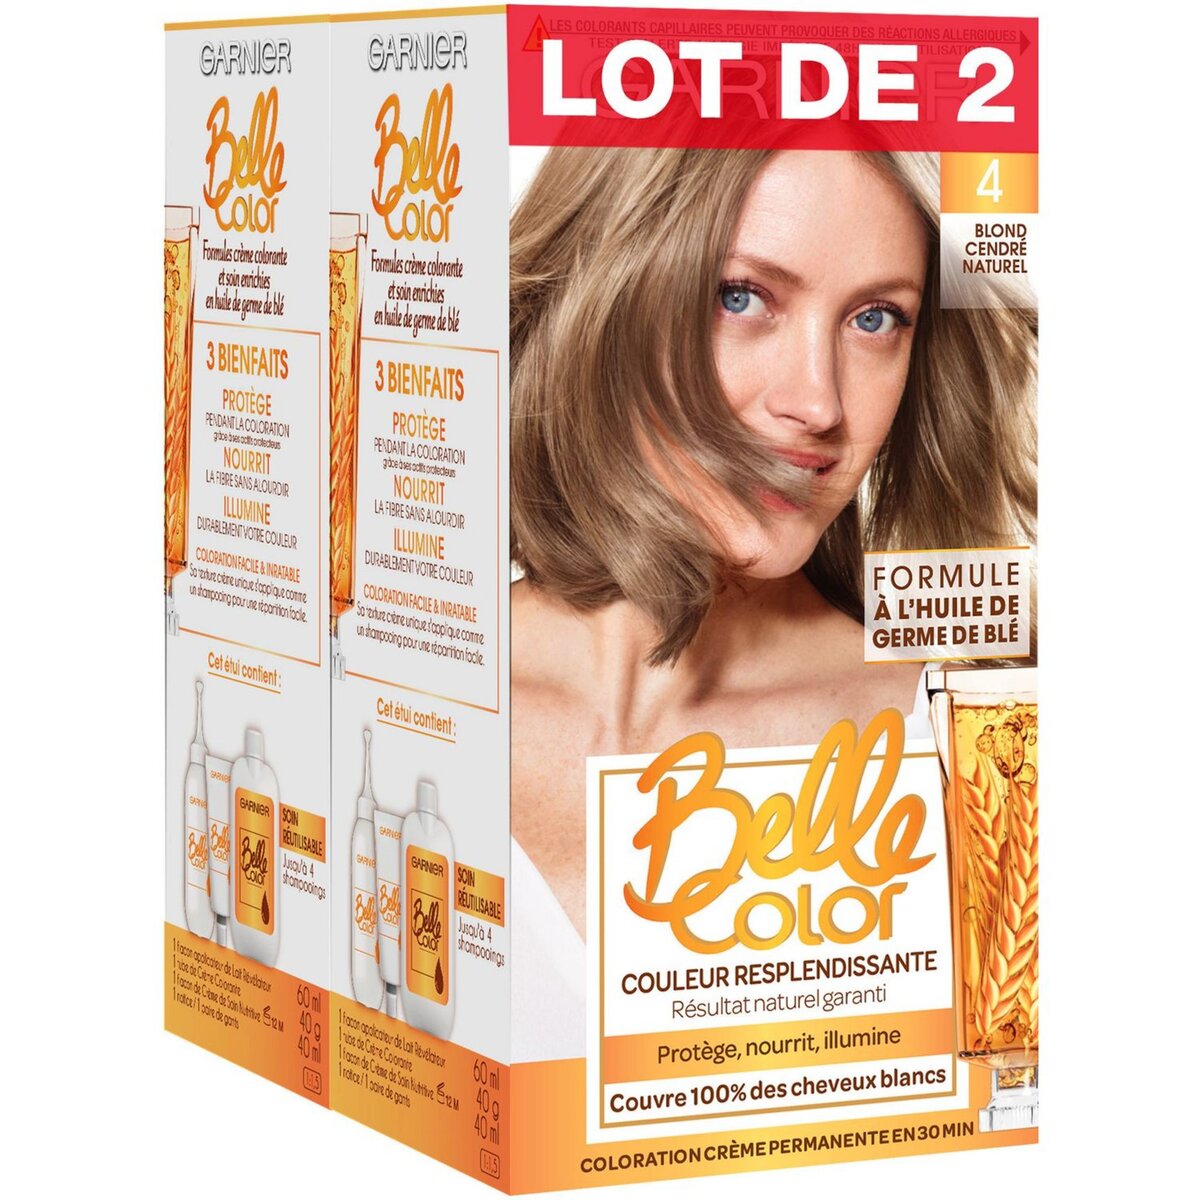 GARNIER Belle Color coloration permanente 4 blond cendré naturel 2x3 produits 2 kits